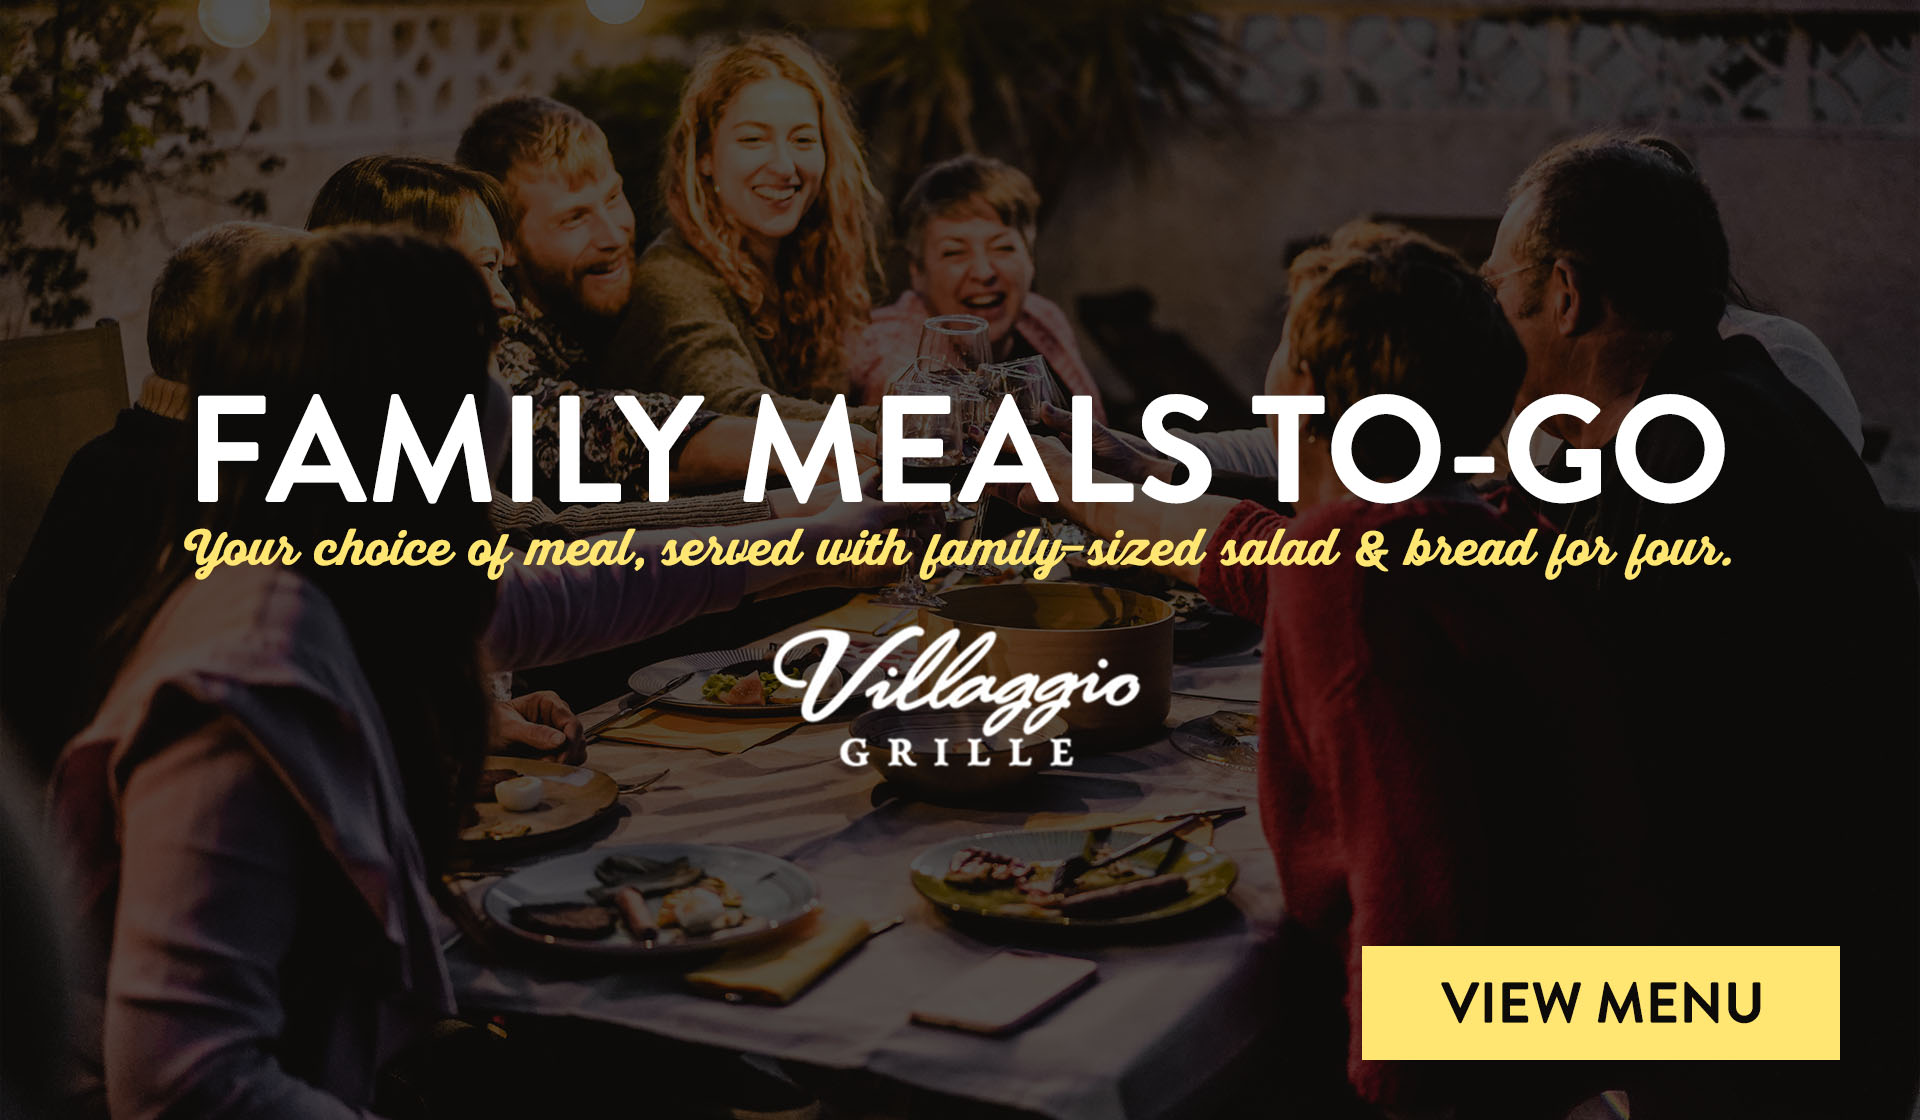 Villaggio Grille Family Meals, Takeout in Orange Beach, Al